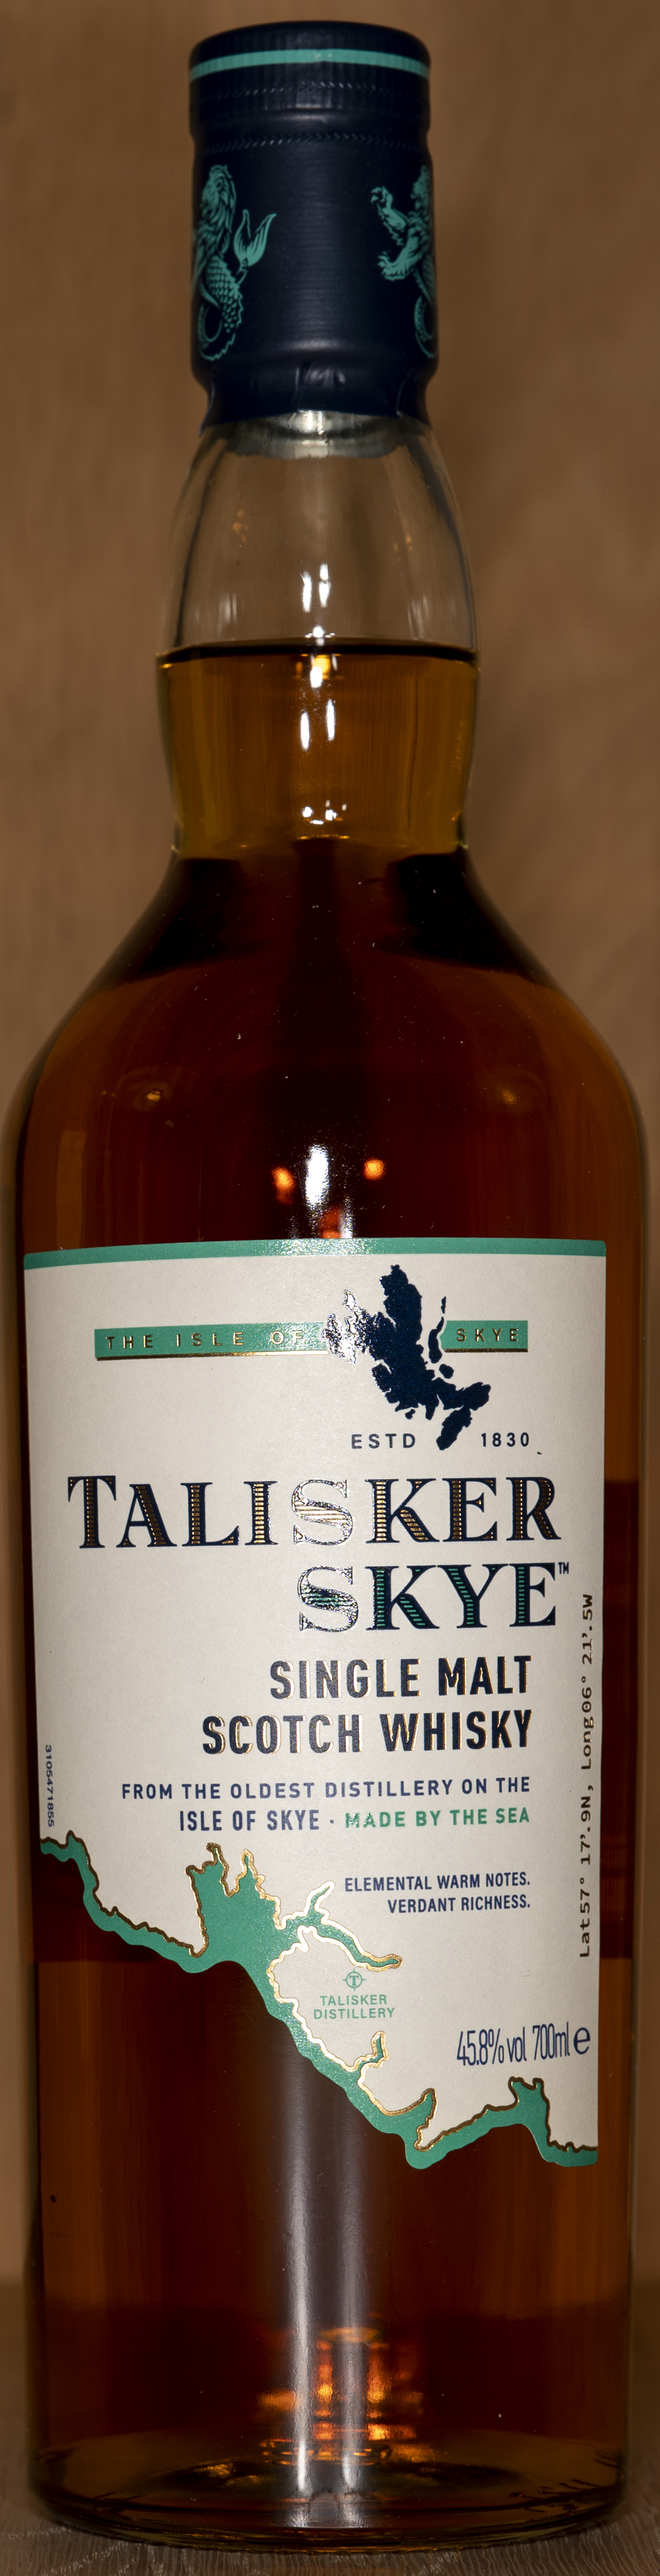 Billede: DSC_5010 - Talisker Skye - bottle front.jpg